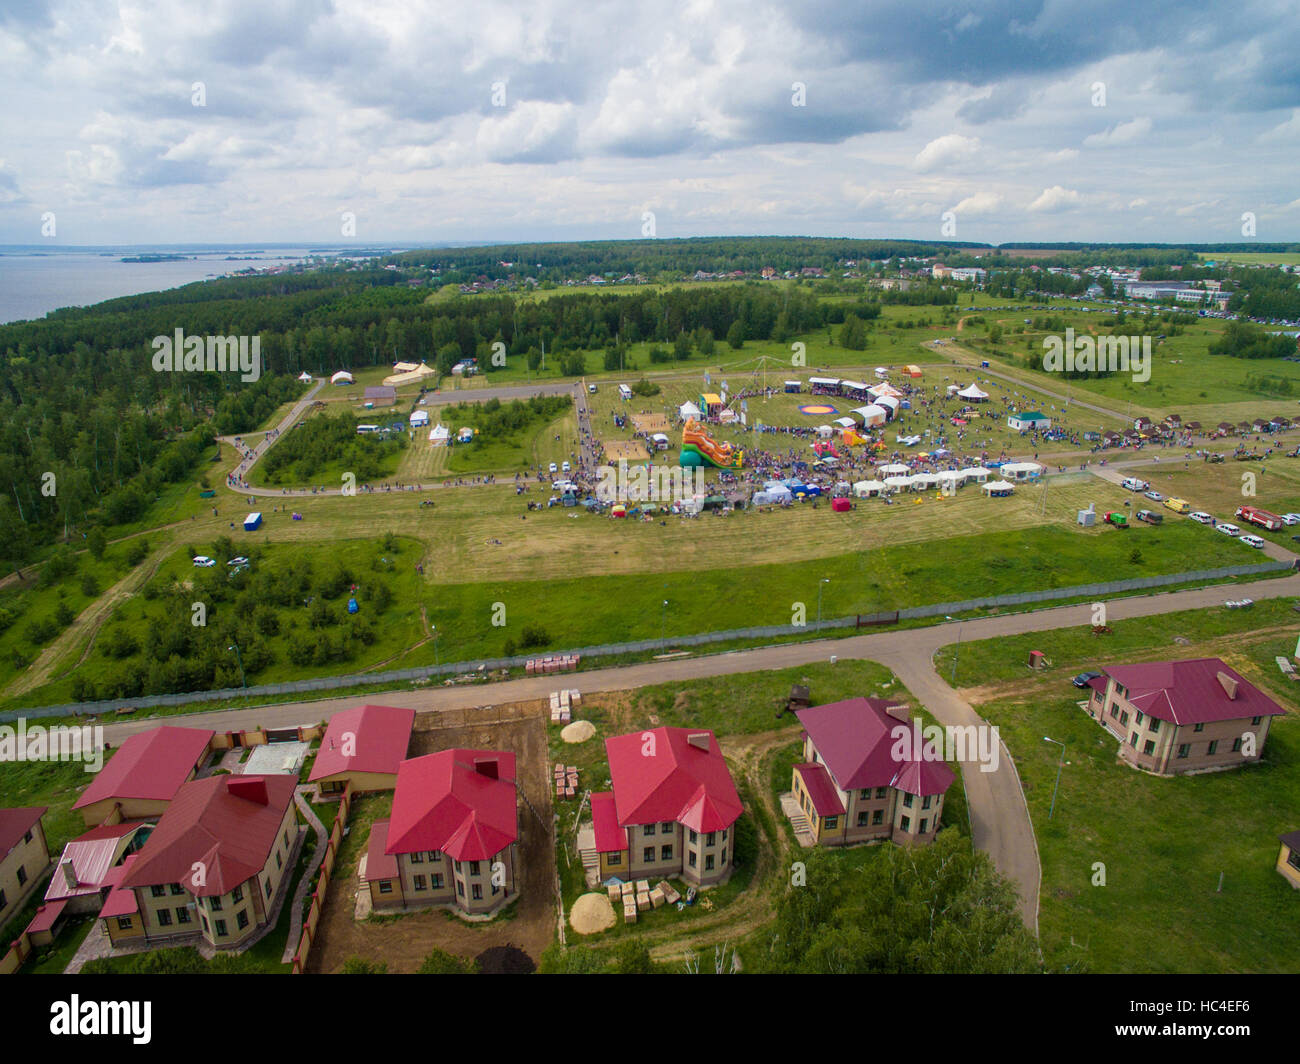 Sabantui celebration near of Kazan city. Aerial view Stock Photo